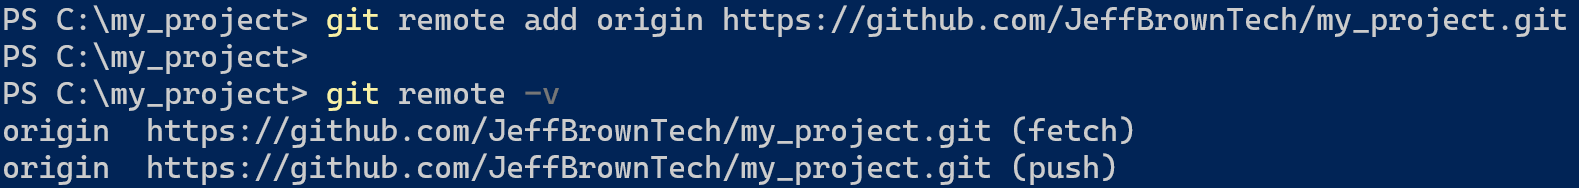 capture d'écran montrant comment ajouter une URL distante avant la fusion dans Git